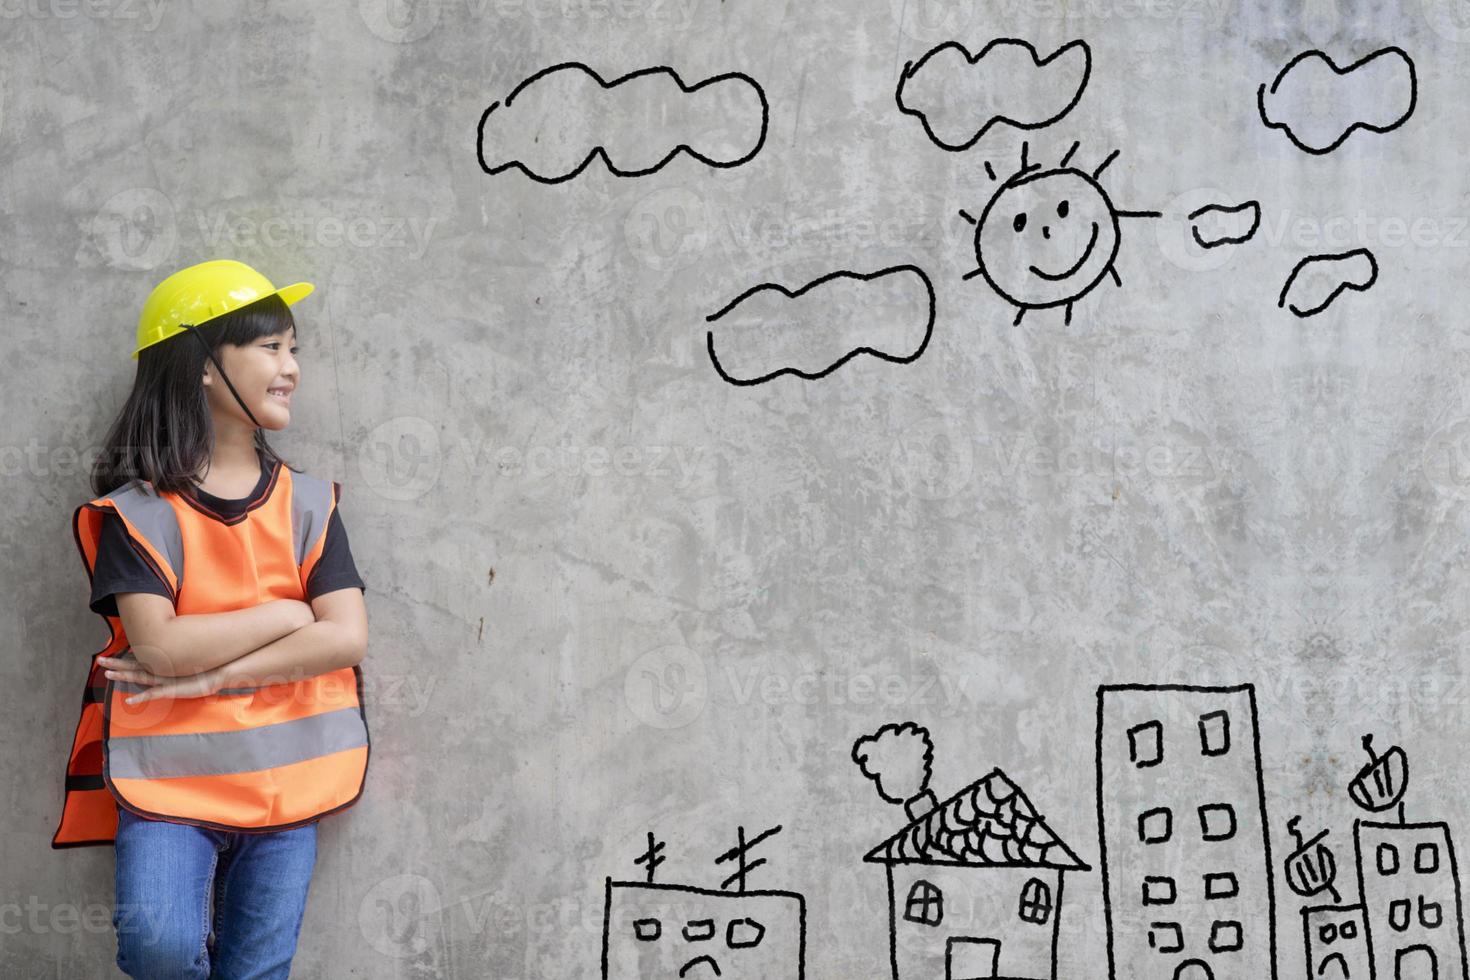 petite fille asiatique ingénierie avec environnement de dessin créatif avec une famille heureuse, contre un mur de briques photo